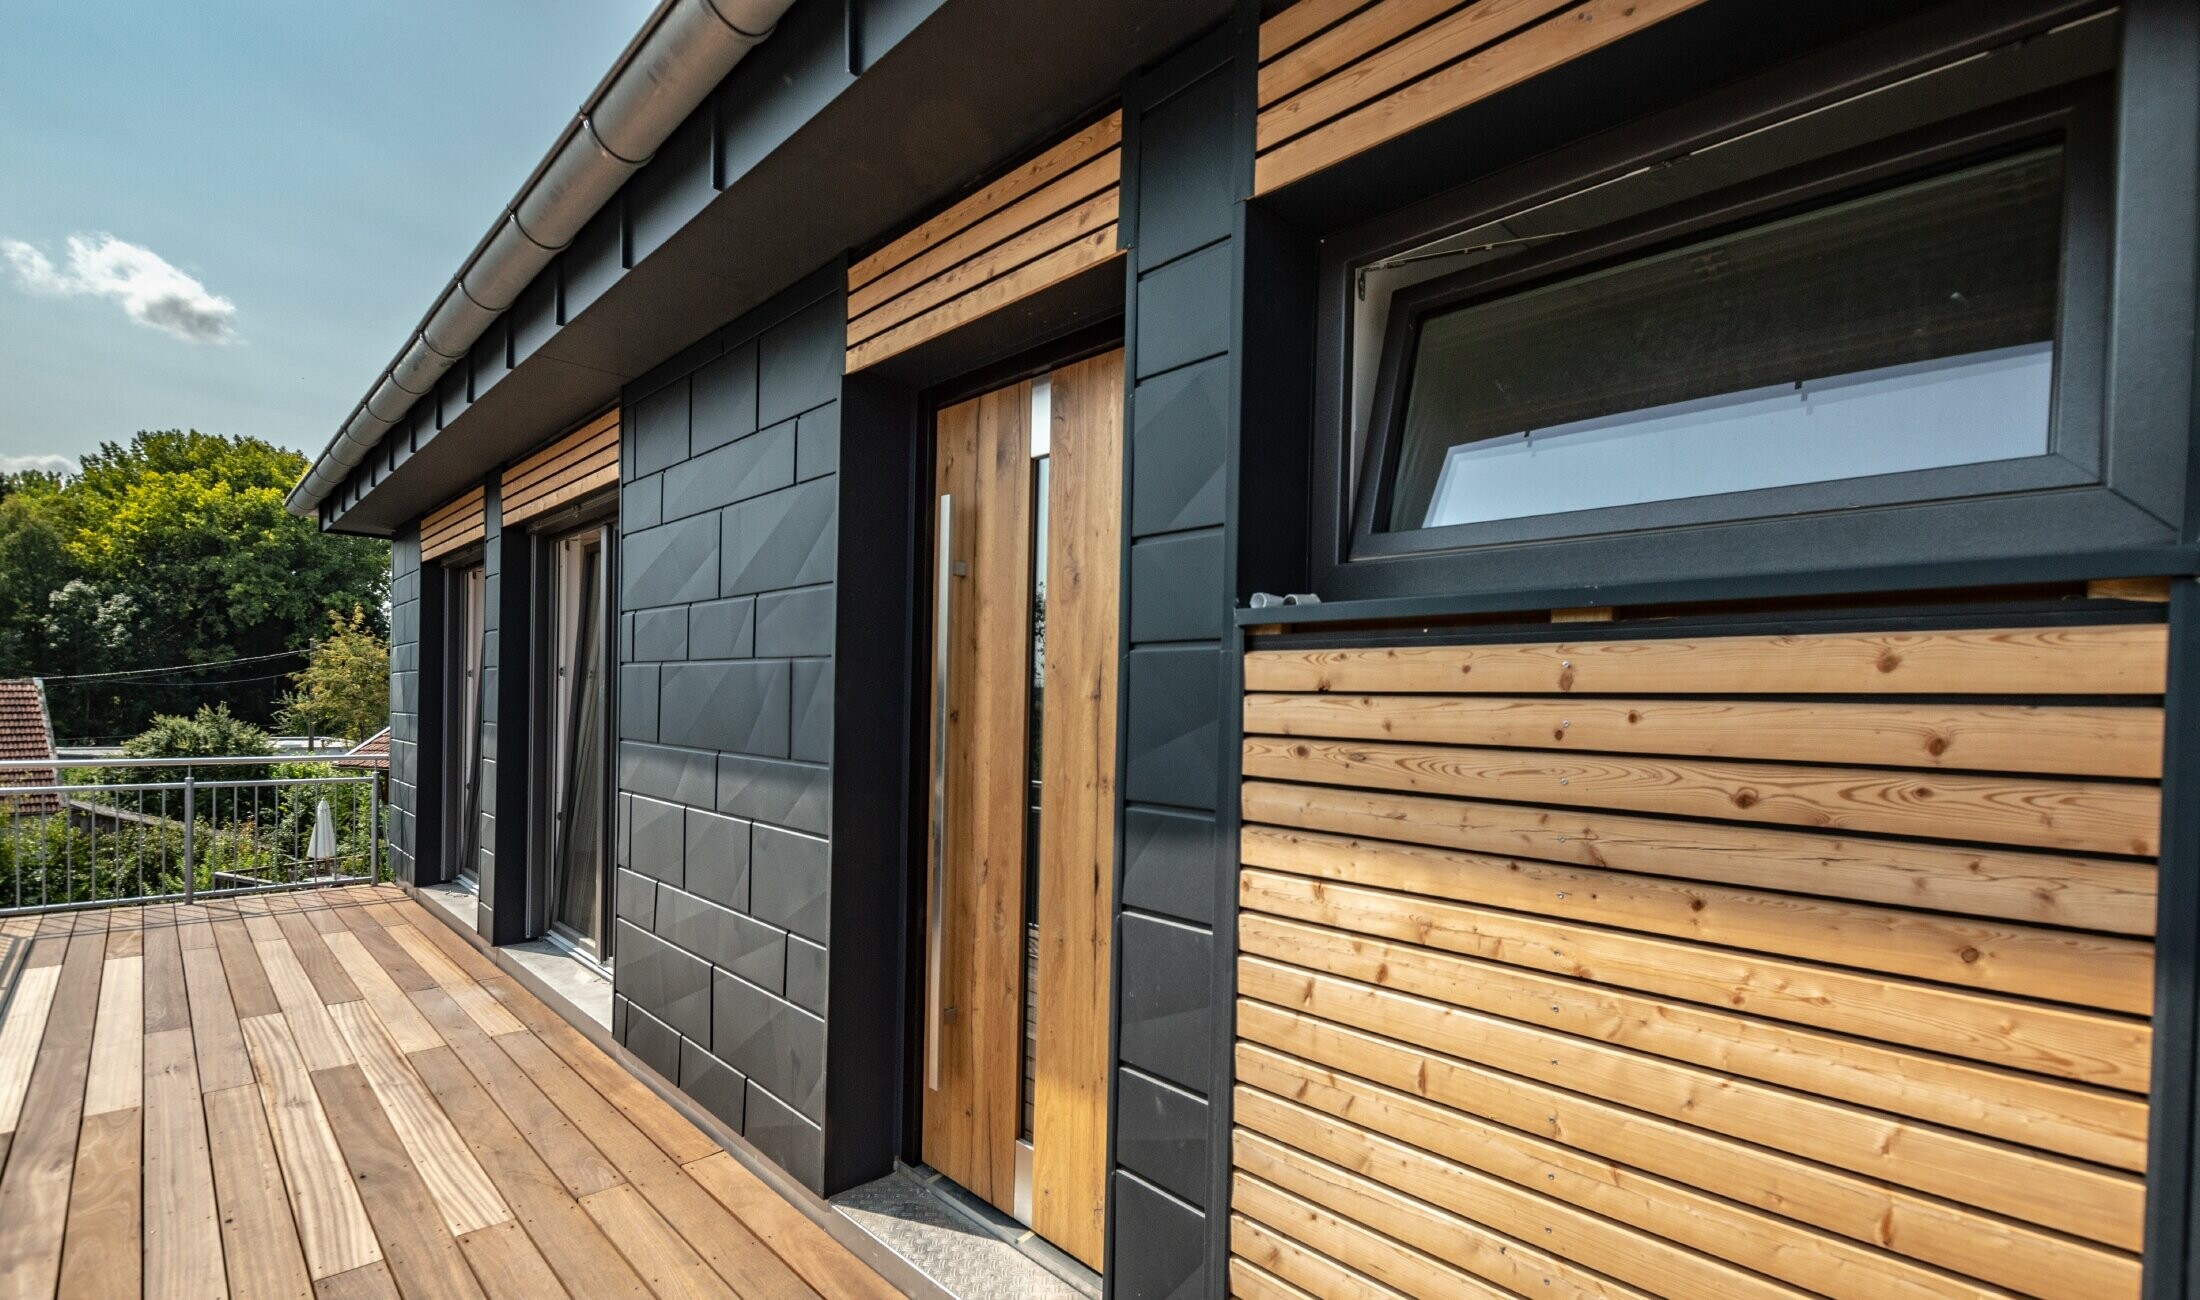 Conception de façade par mélange des matériaux que sont l’aluminium avec le Siding.X PREFA couleur anthracite, et les tasseaux en bois horizontaux.